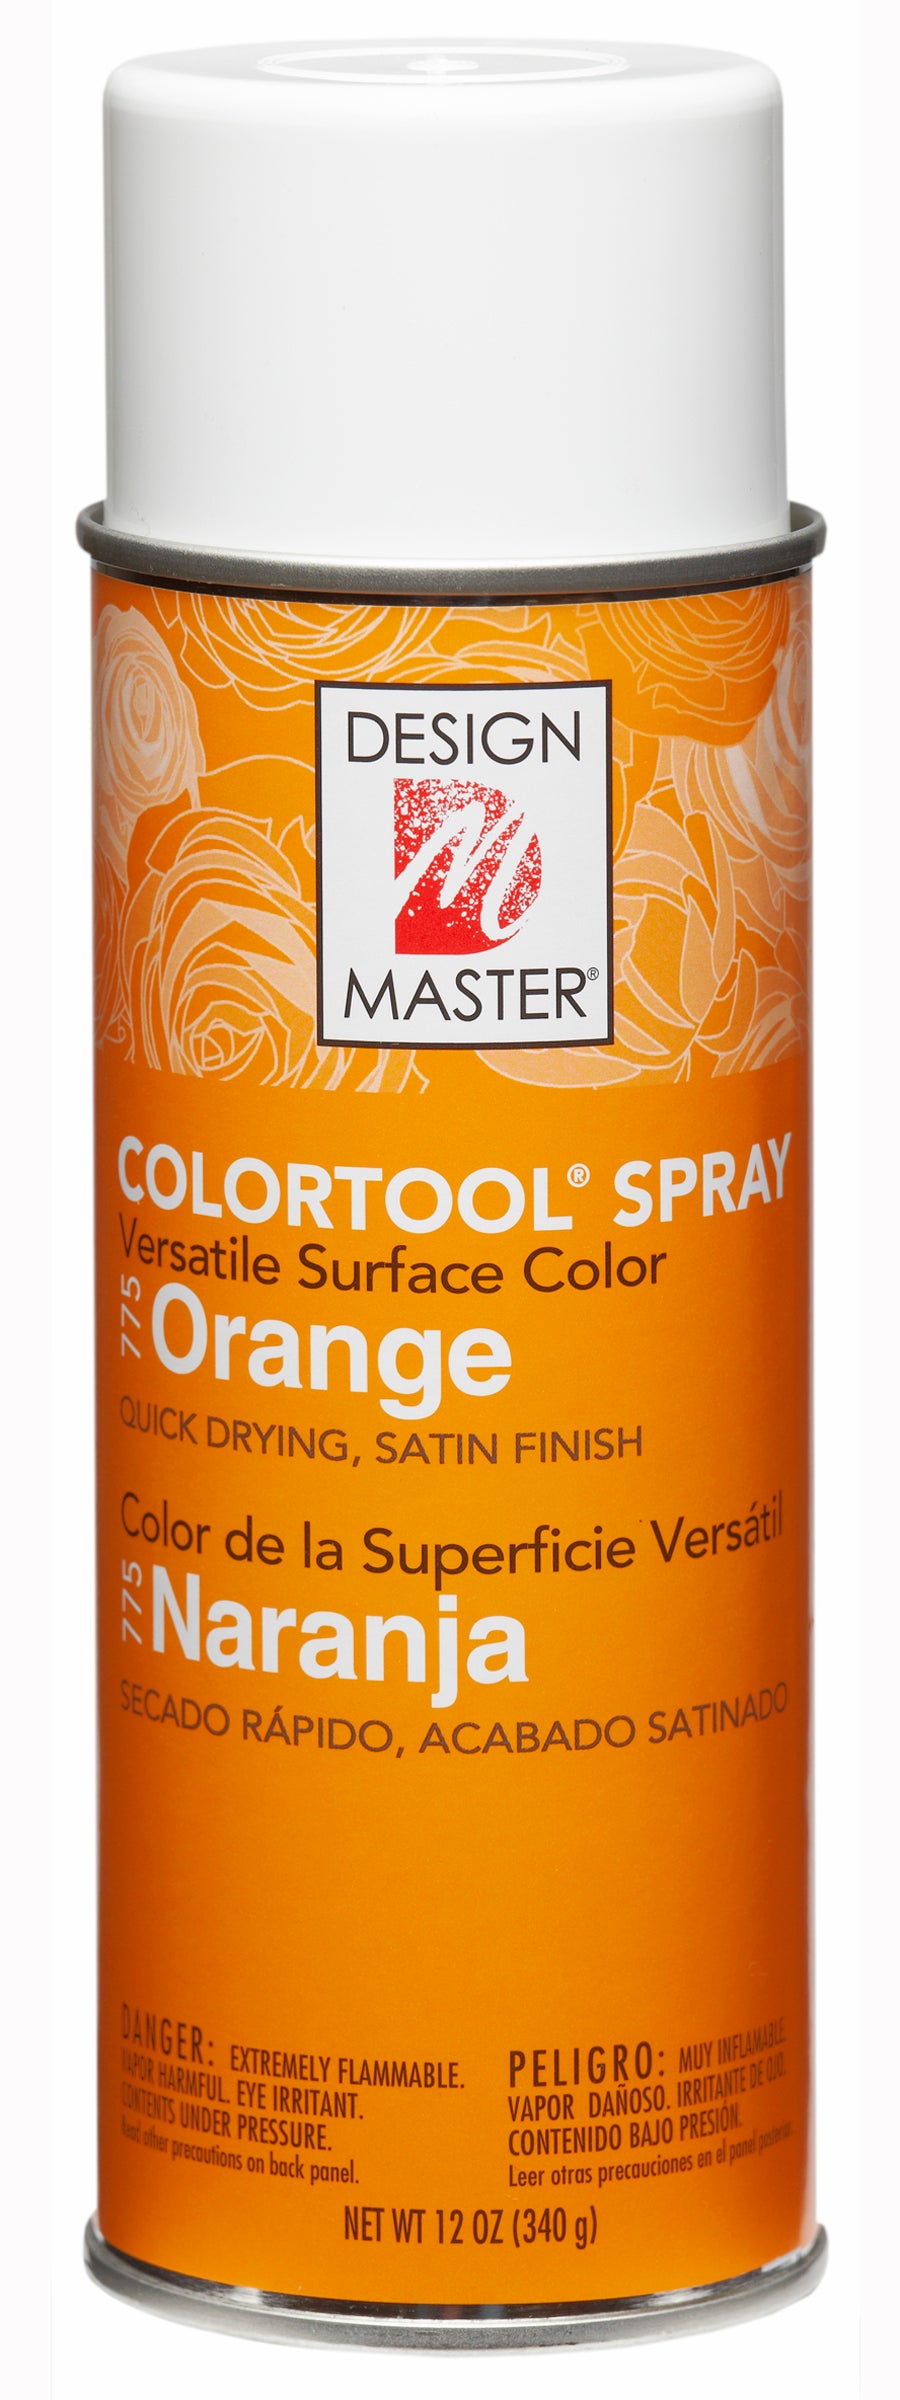 Design Master Colortool Spray-Orange